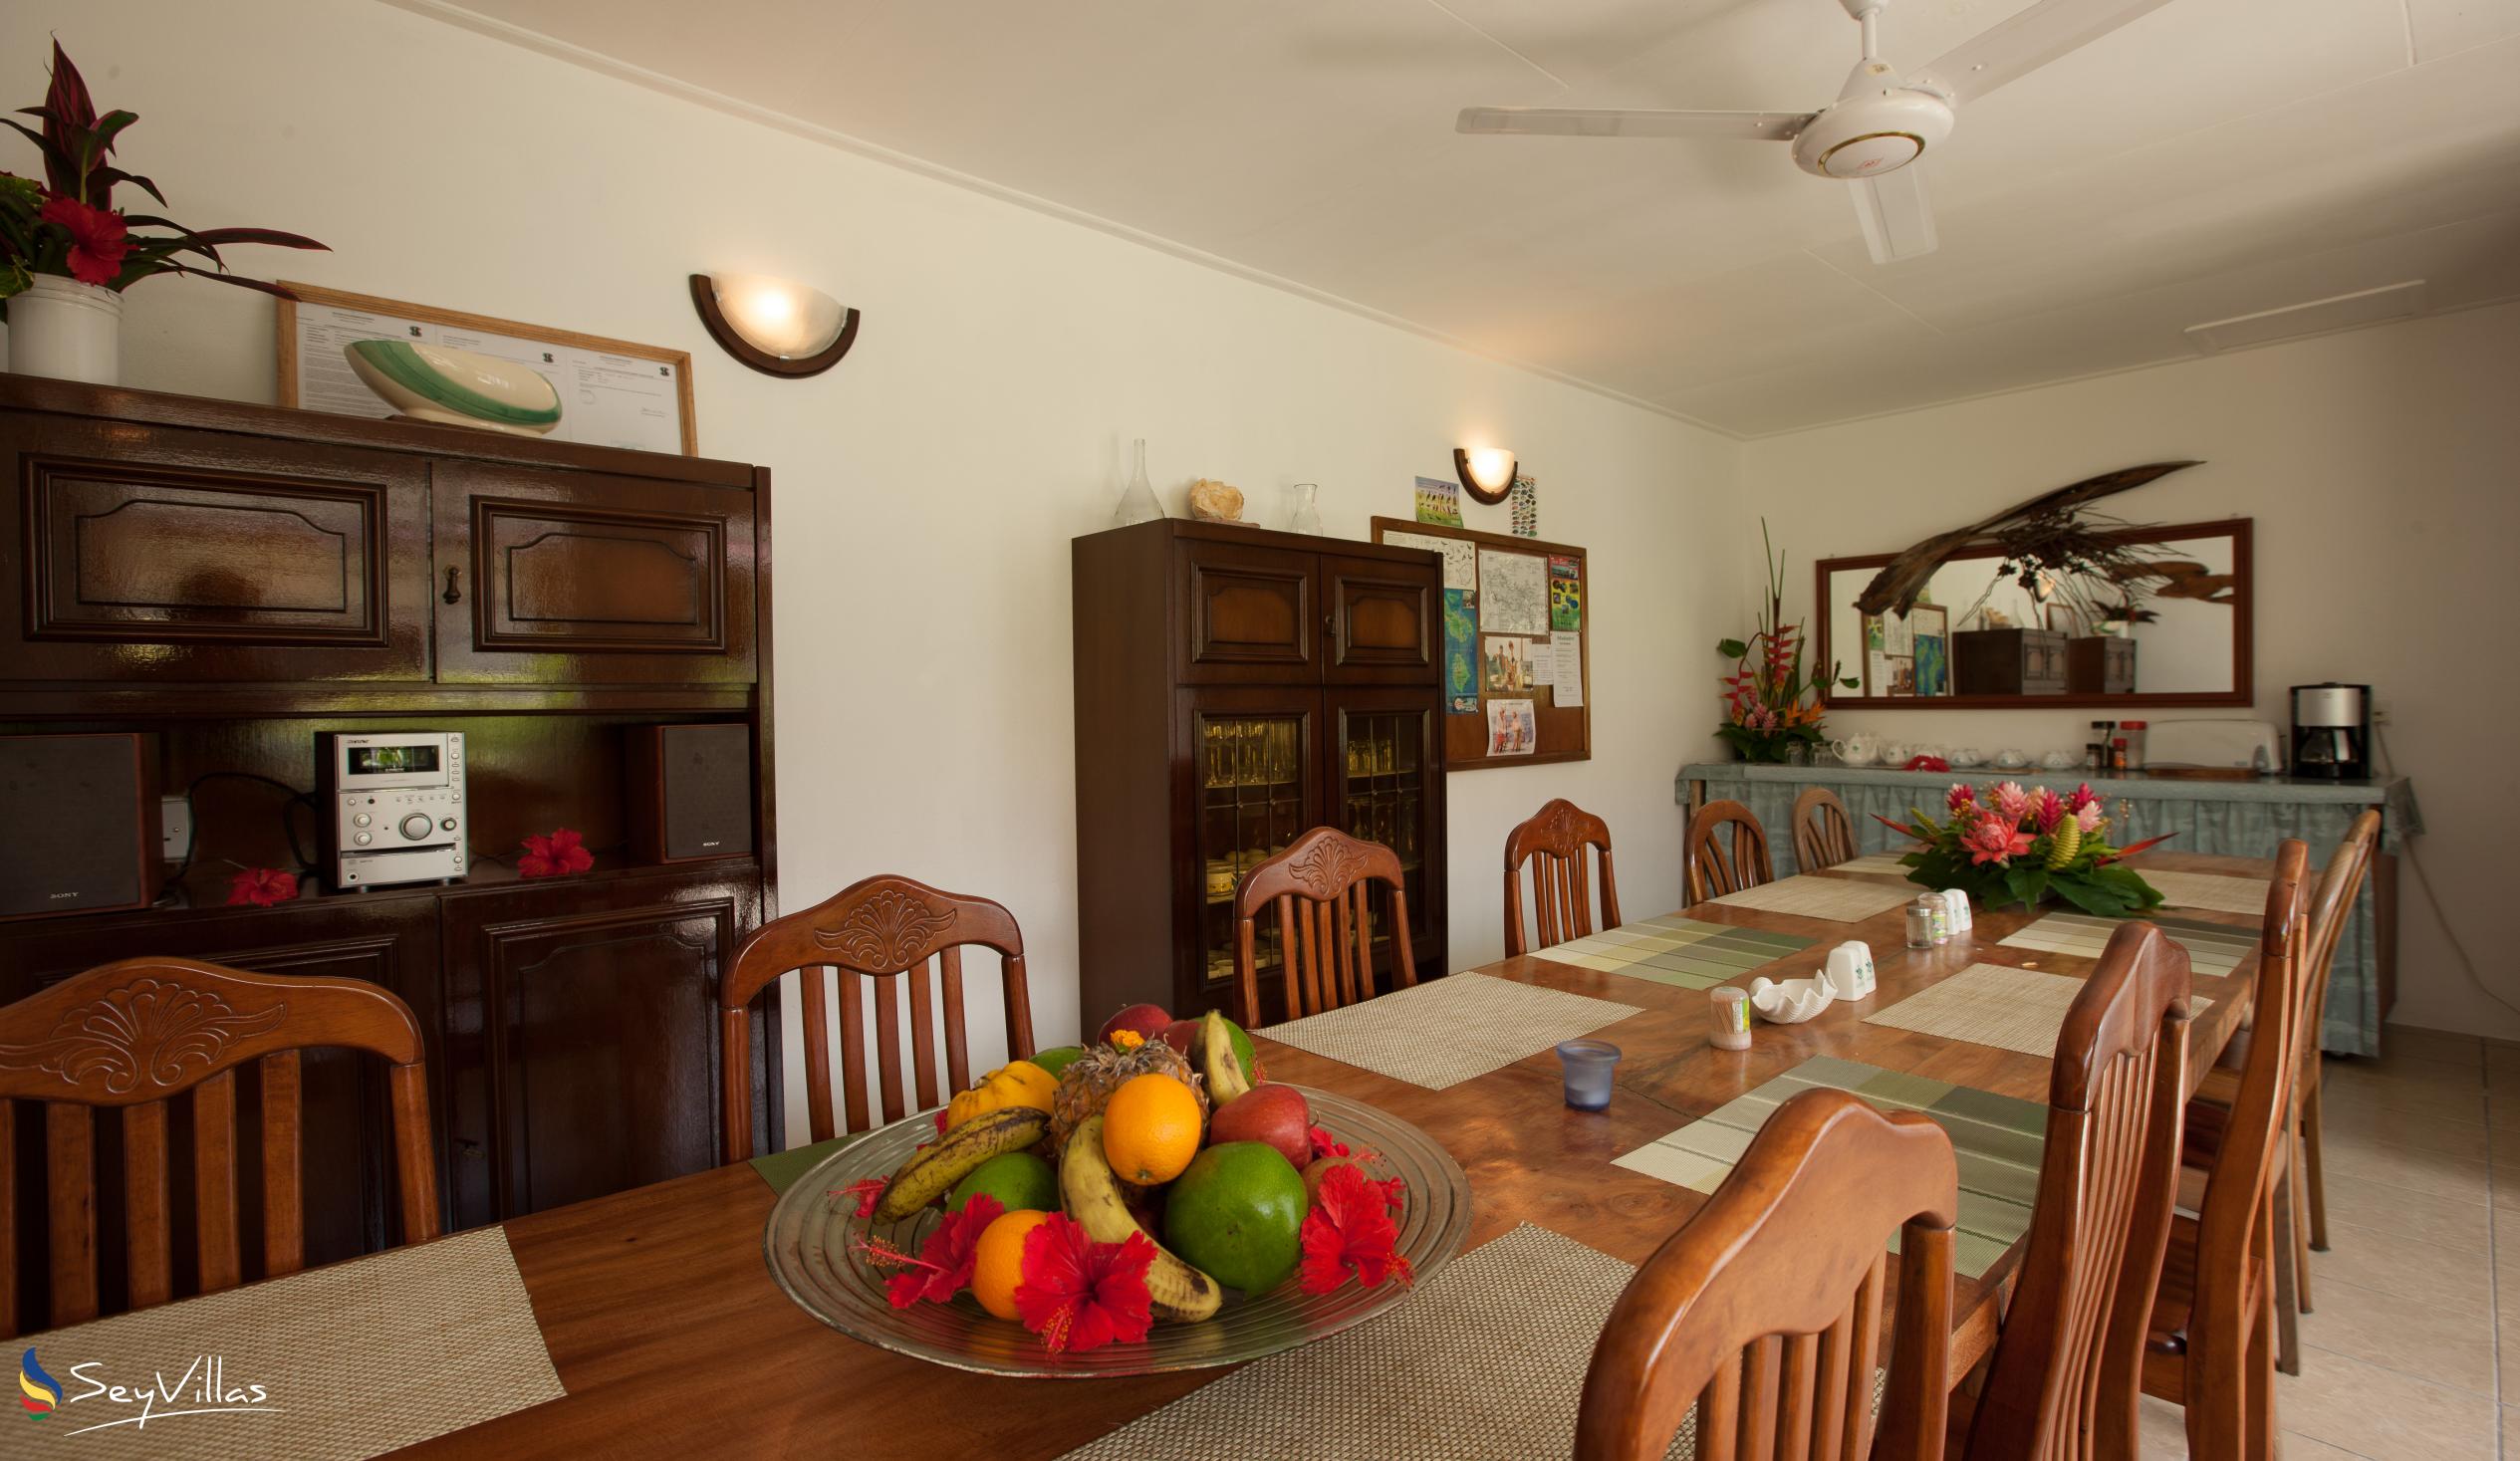 Foto 11: Le Relax St. Joseph Guest House - Intérieur - Praslin (Seychelles)